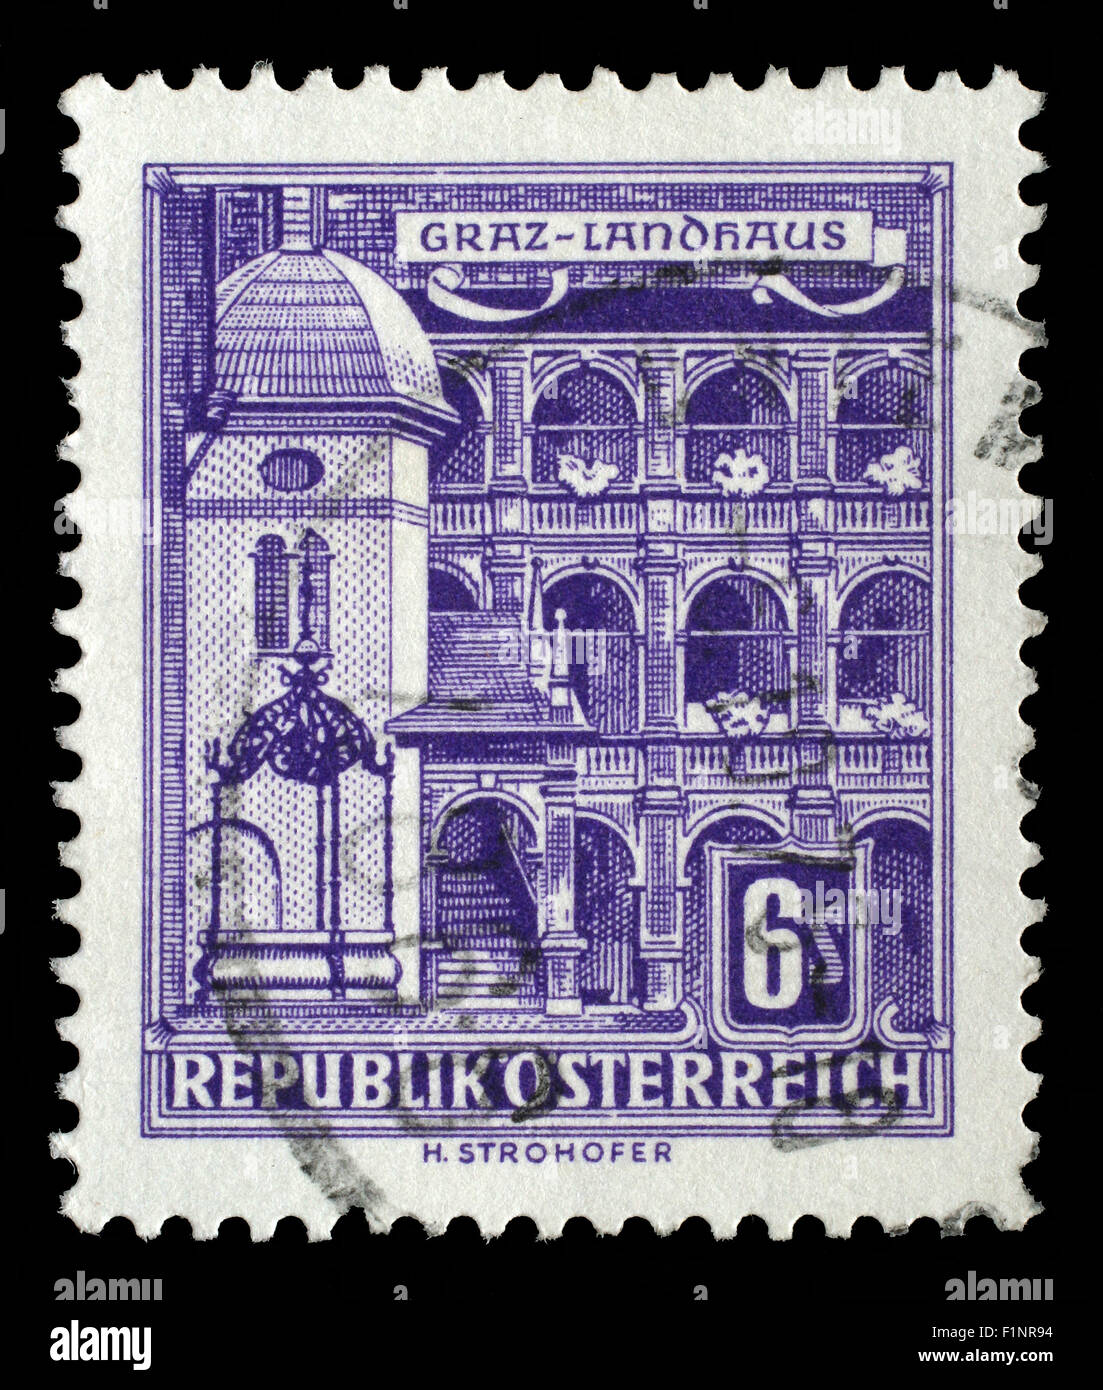 Stamp printed in Austria shows Graz Landhaus, circa 1957. Stock Photo